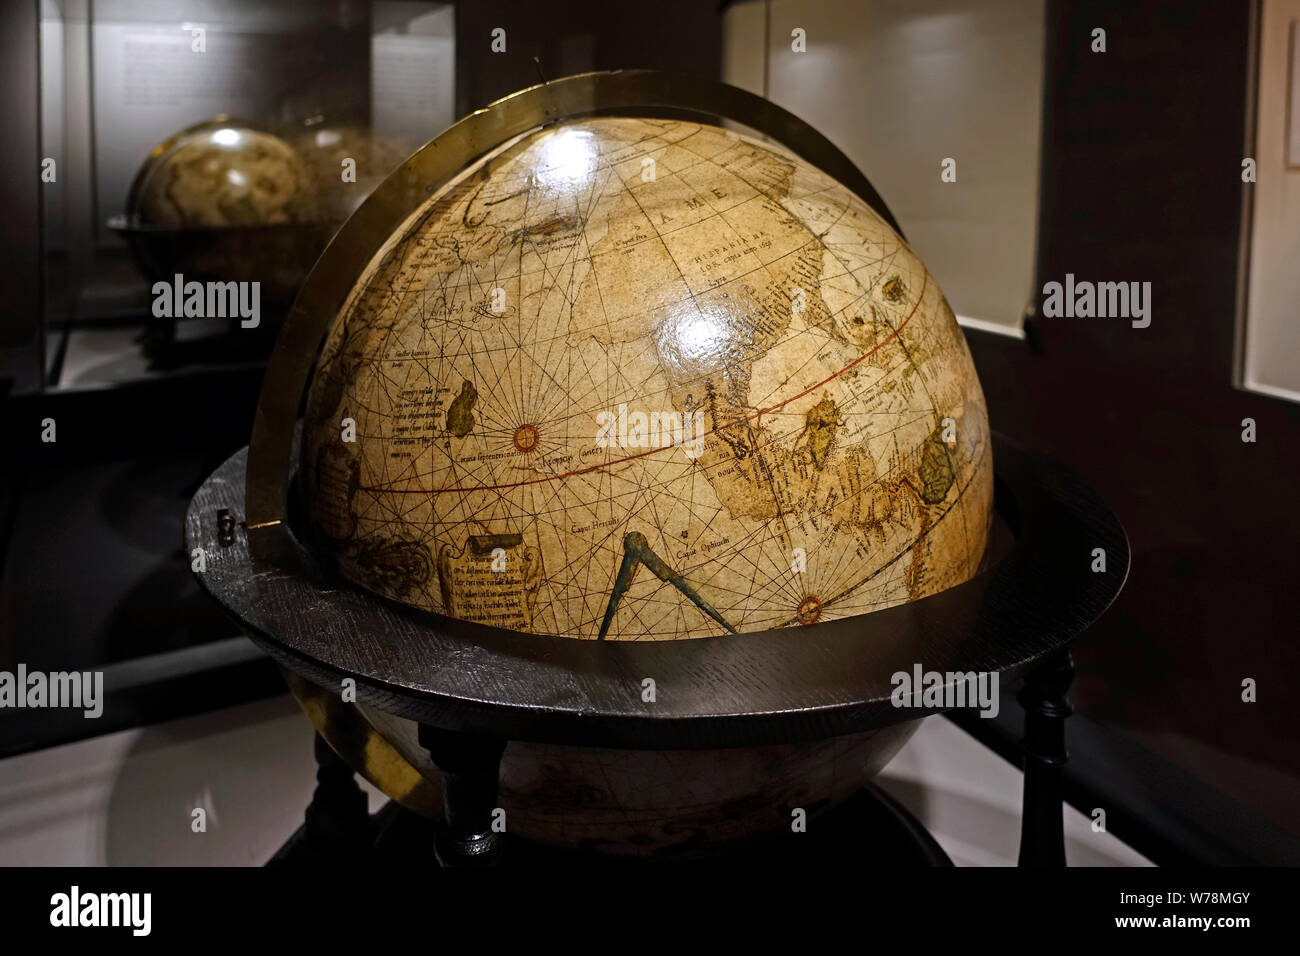 Xvi secolo globo terrestre nella proiezione di Mercatore museo sulla storia della cartografia, Sint-Niklaas, Fiandre Orientali, Belgio Foto Stock